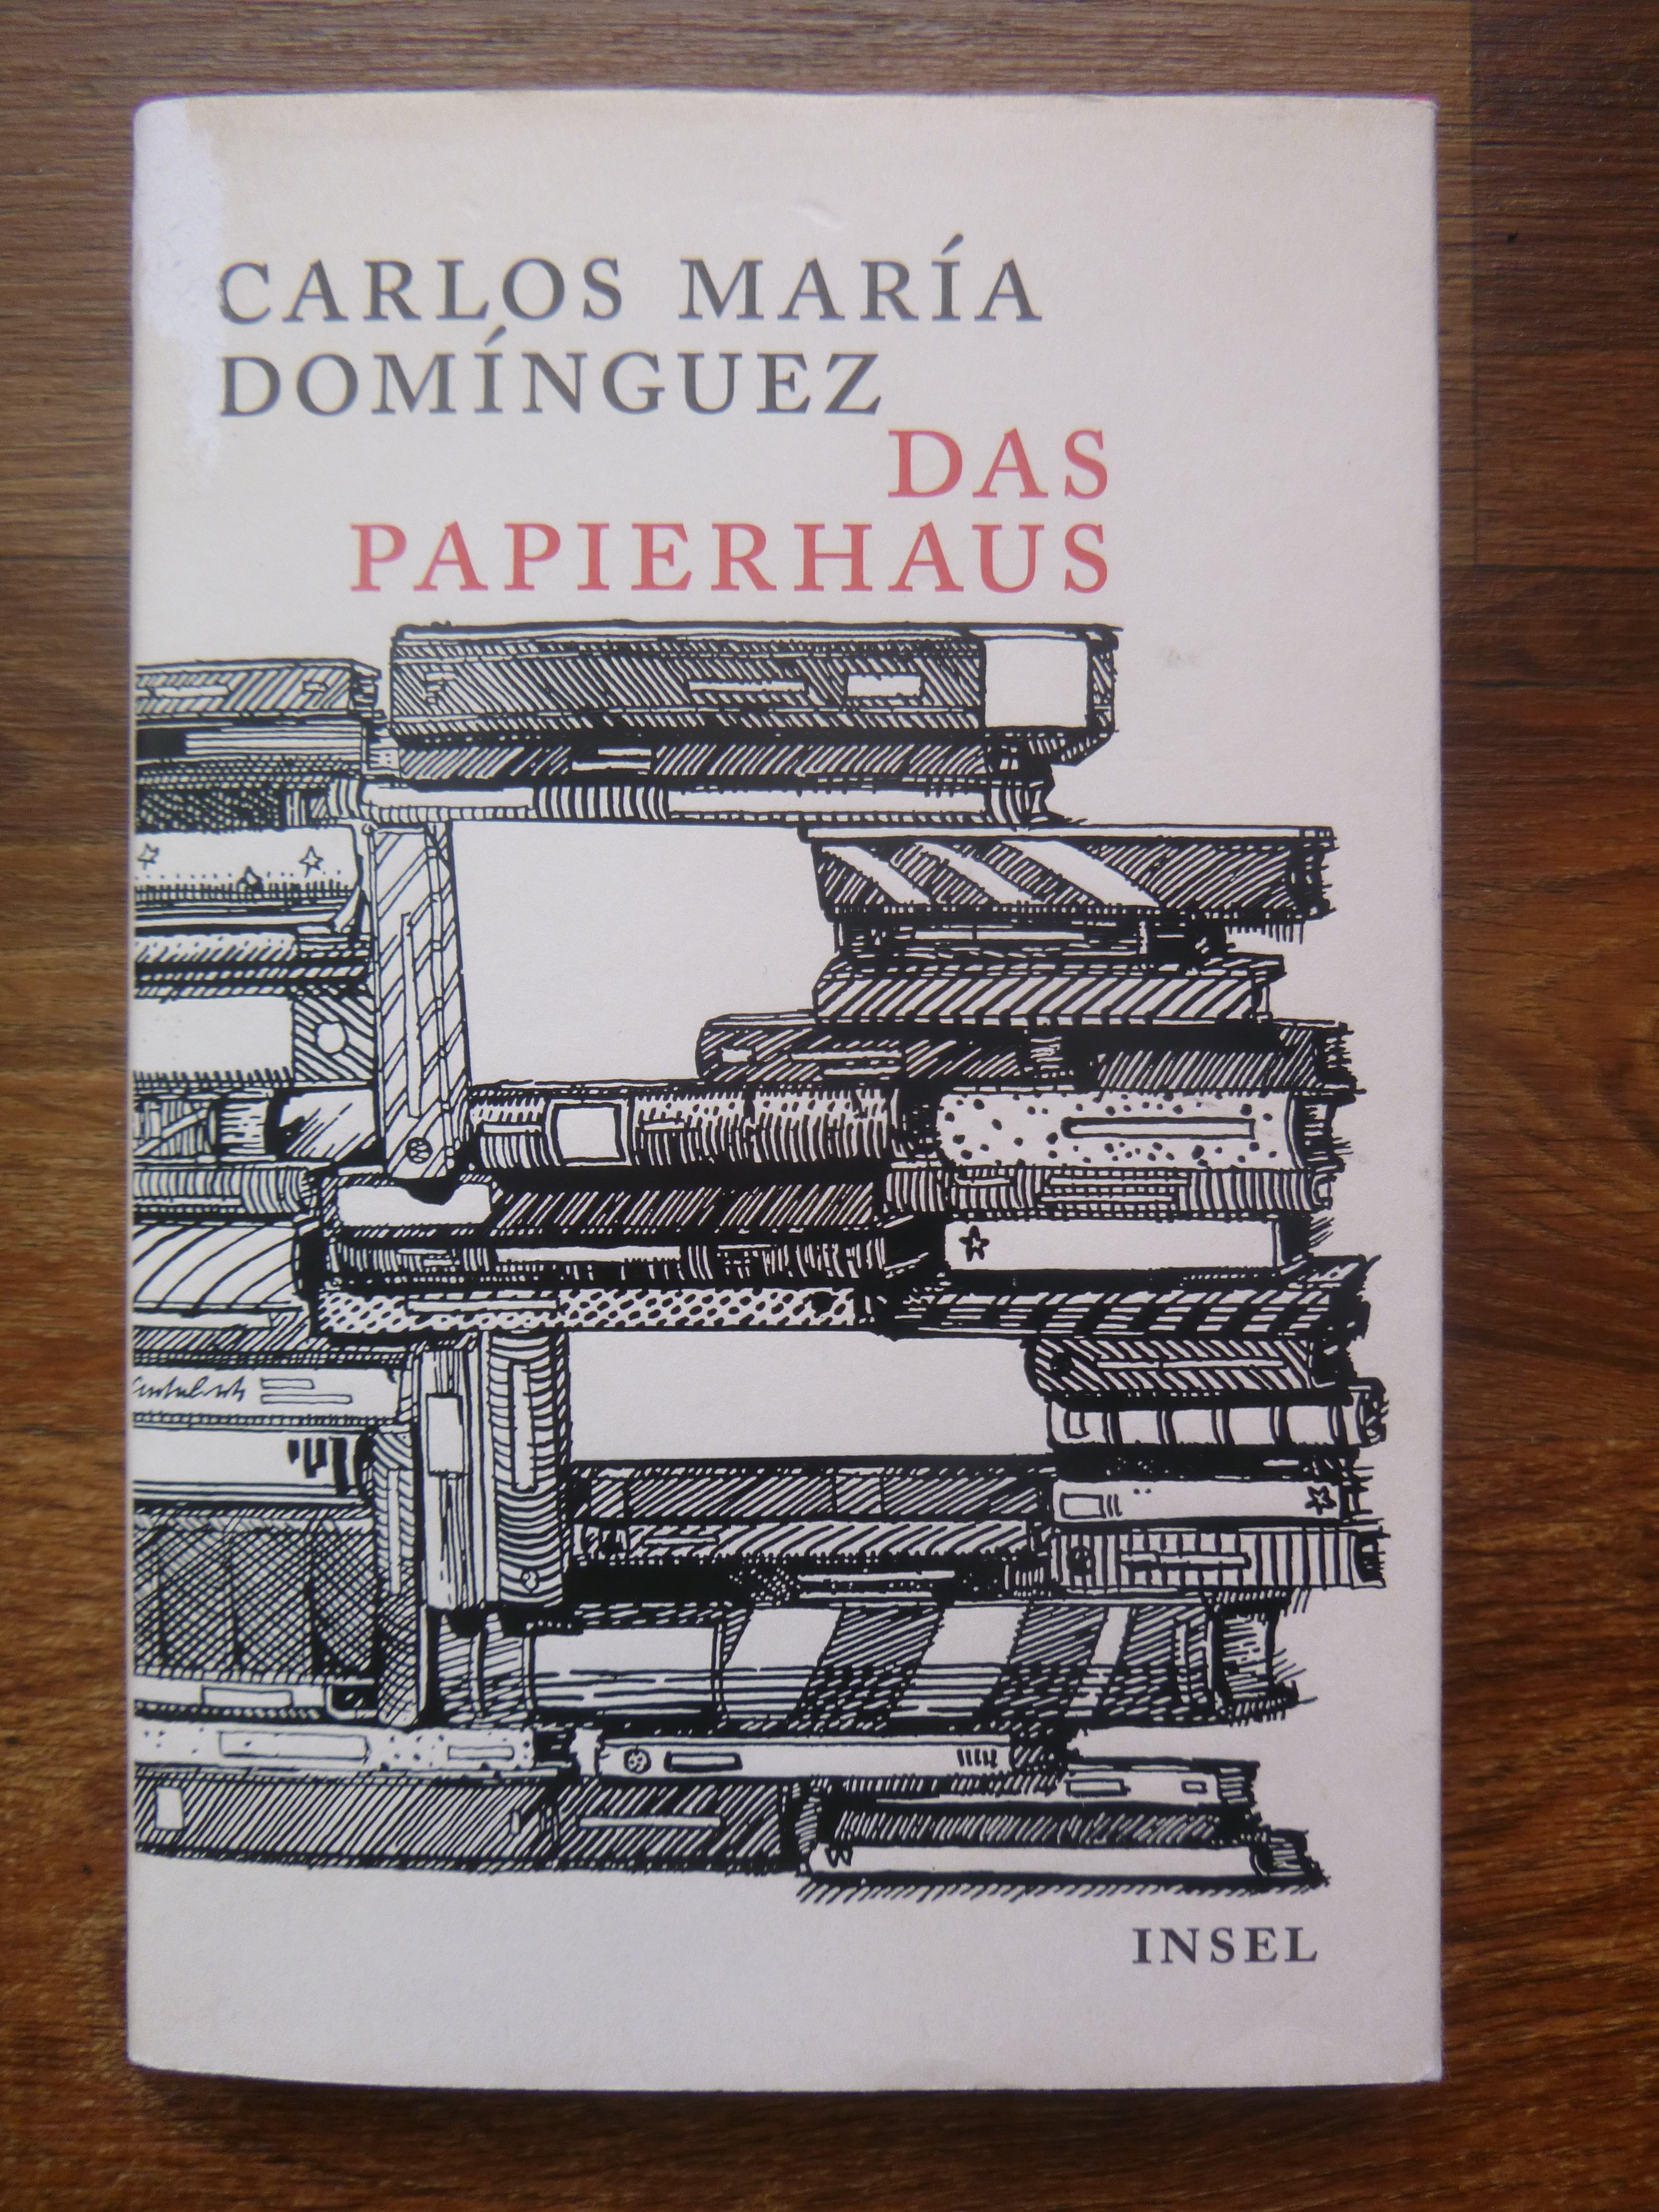 [BücherinBüchern] Eine Liebeserklärung ans Buch: "Das Papierhaus" von Carlos María Domínguez